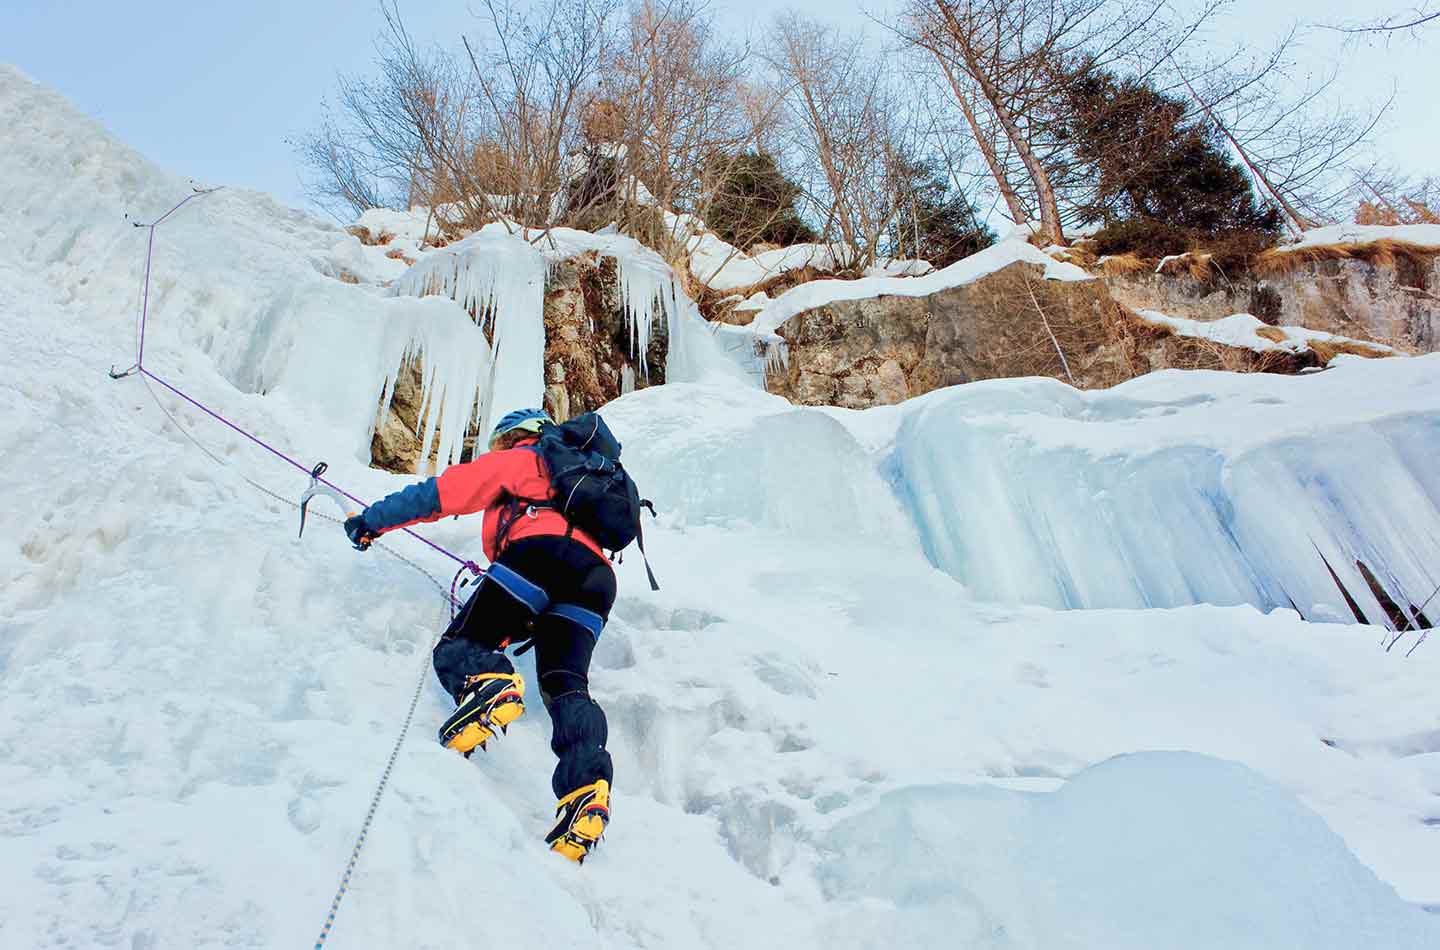 Mann in roter Jacke und mit Rucksack klettert an Eiswand.